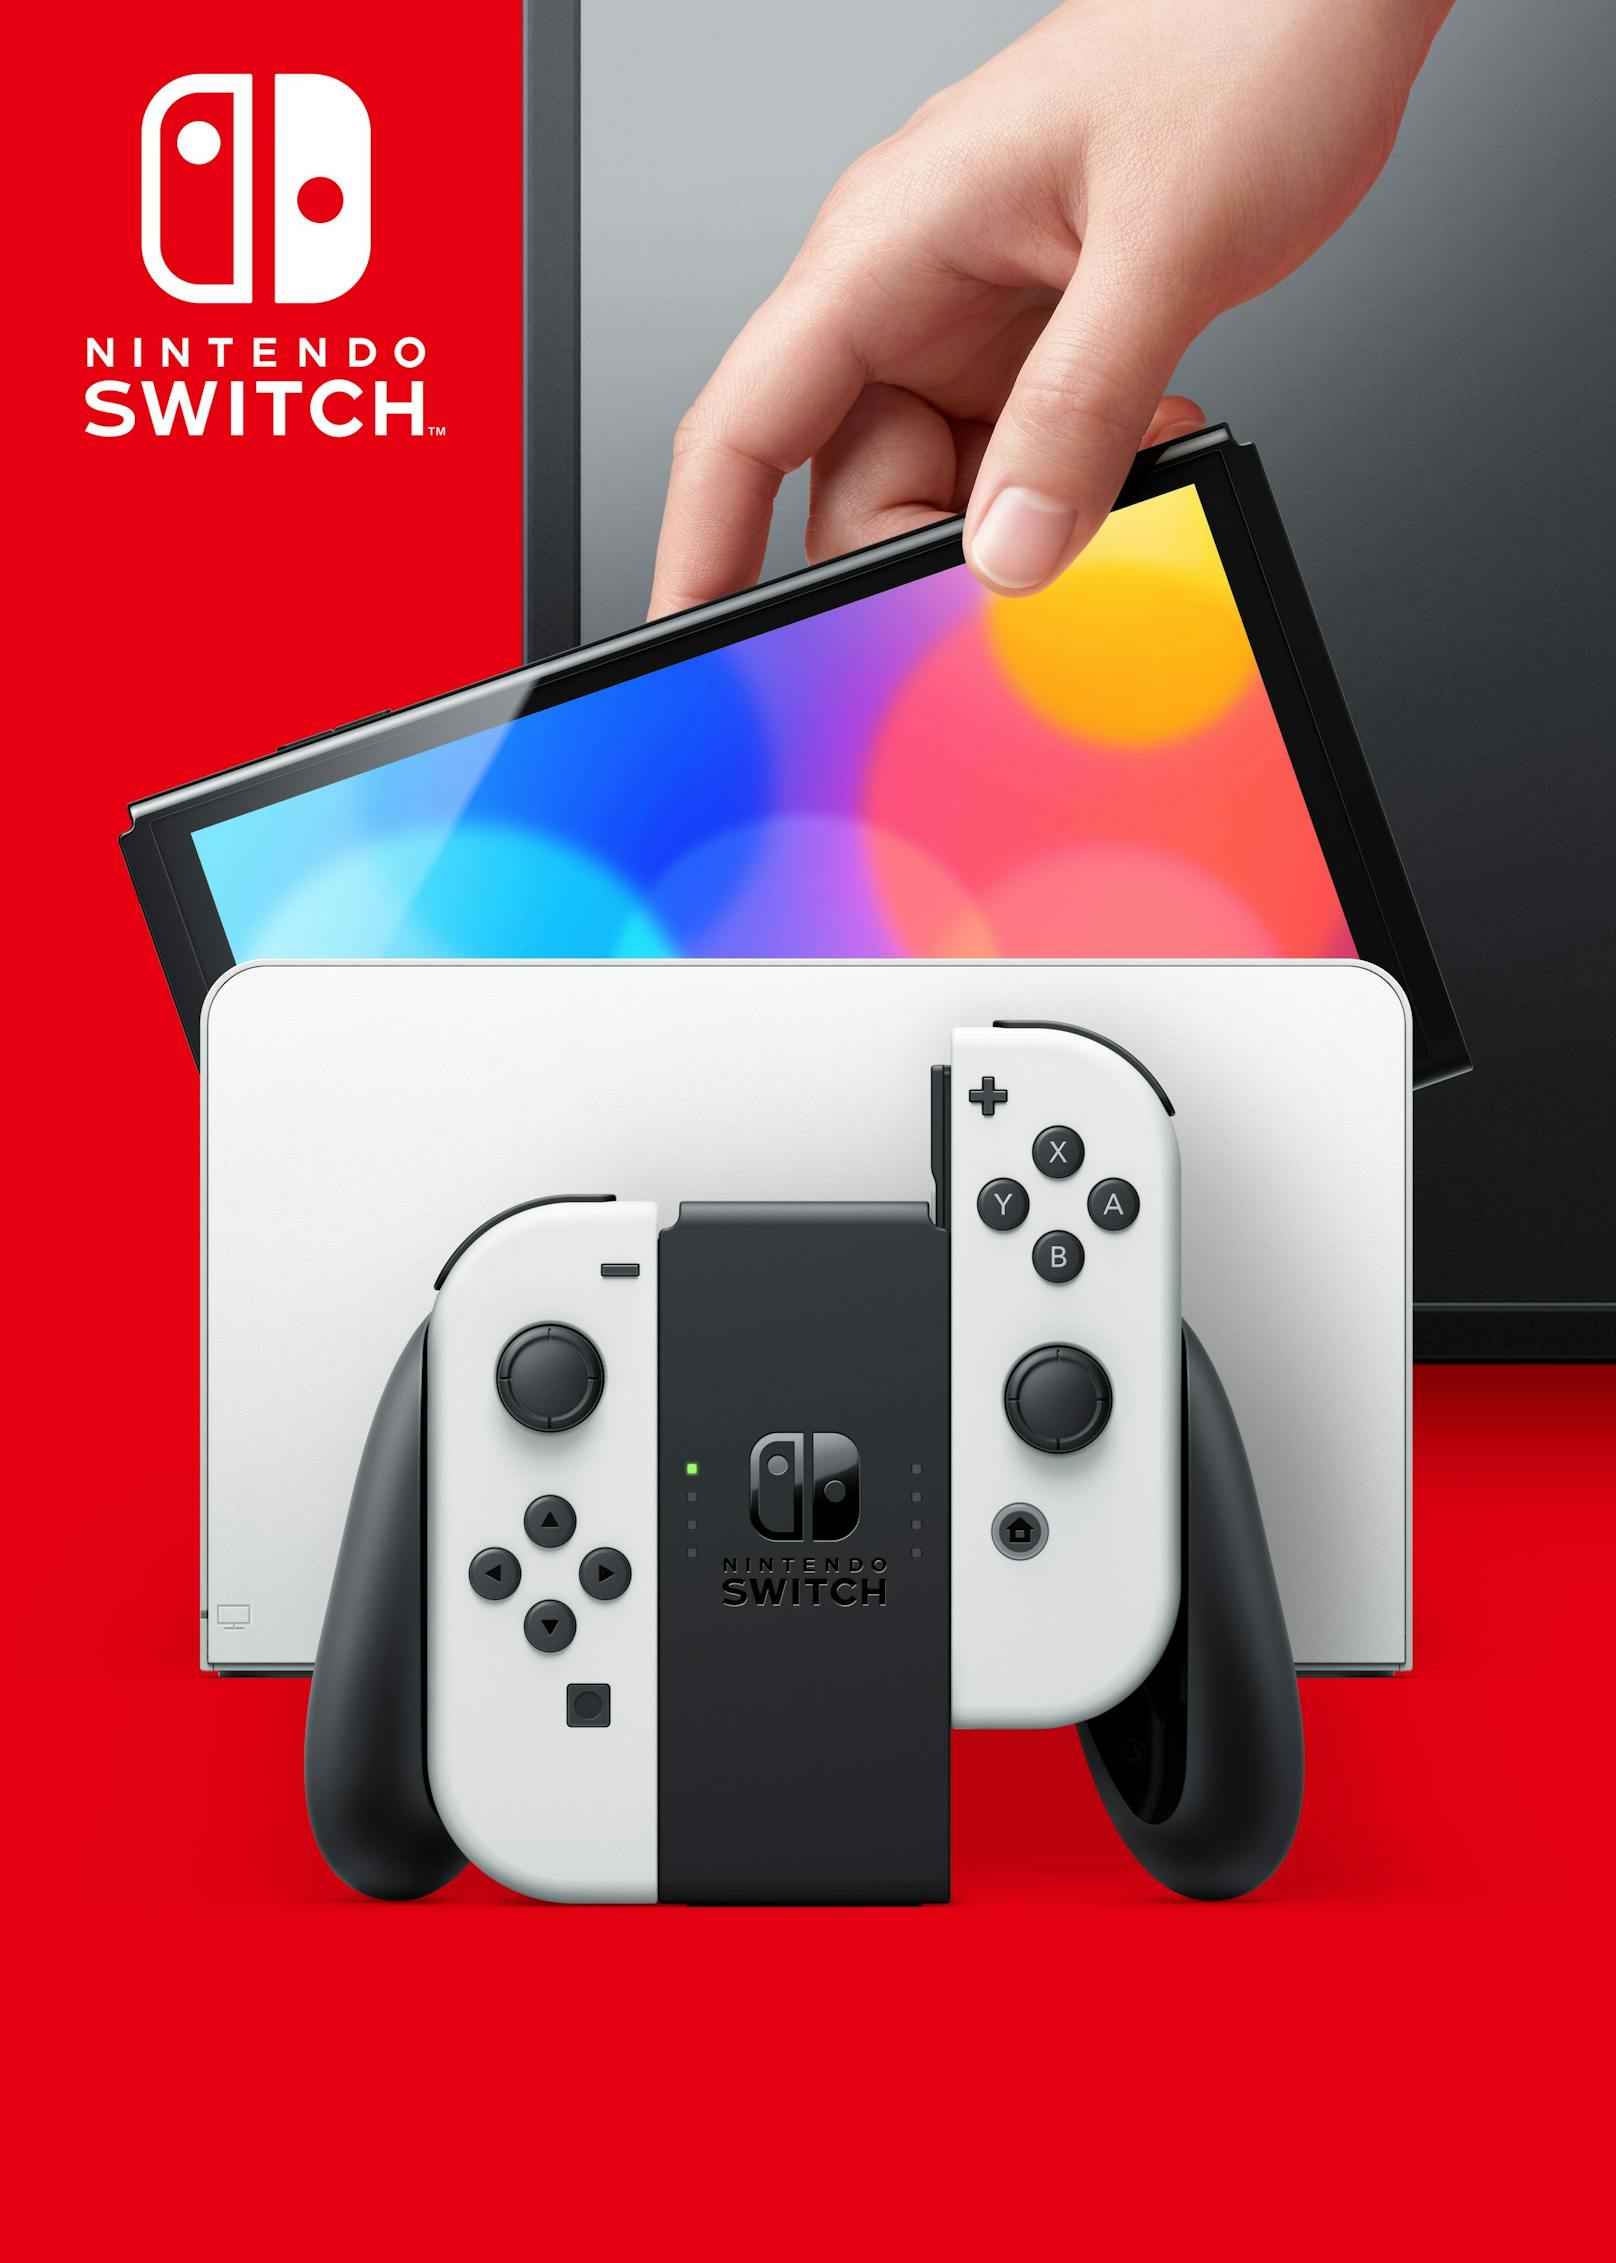 Gestartet wird bei der Nintendo Switch (OLED-Modell) am 8. Oktober mit einer Version mit schwarzer Konsole, weißen Joy-Con und weißer Station sowie einer Version mit schwarzer Konsole, neonrotem und neonblauem Joy-Con und schwarzer Station.